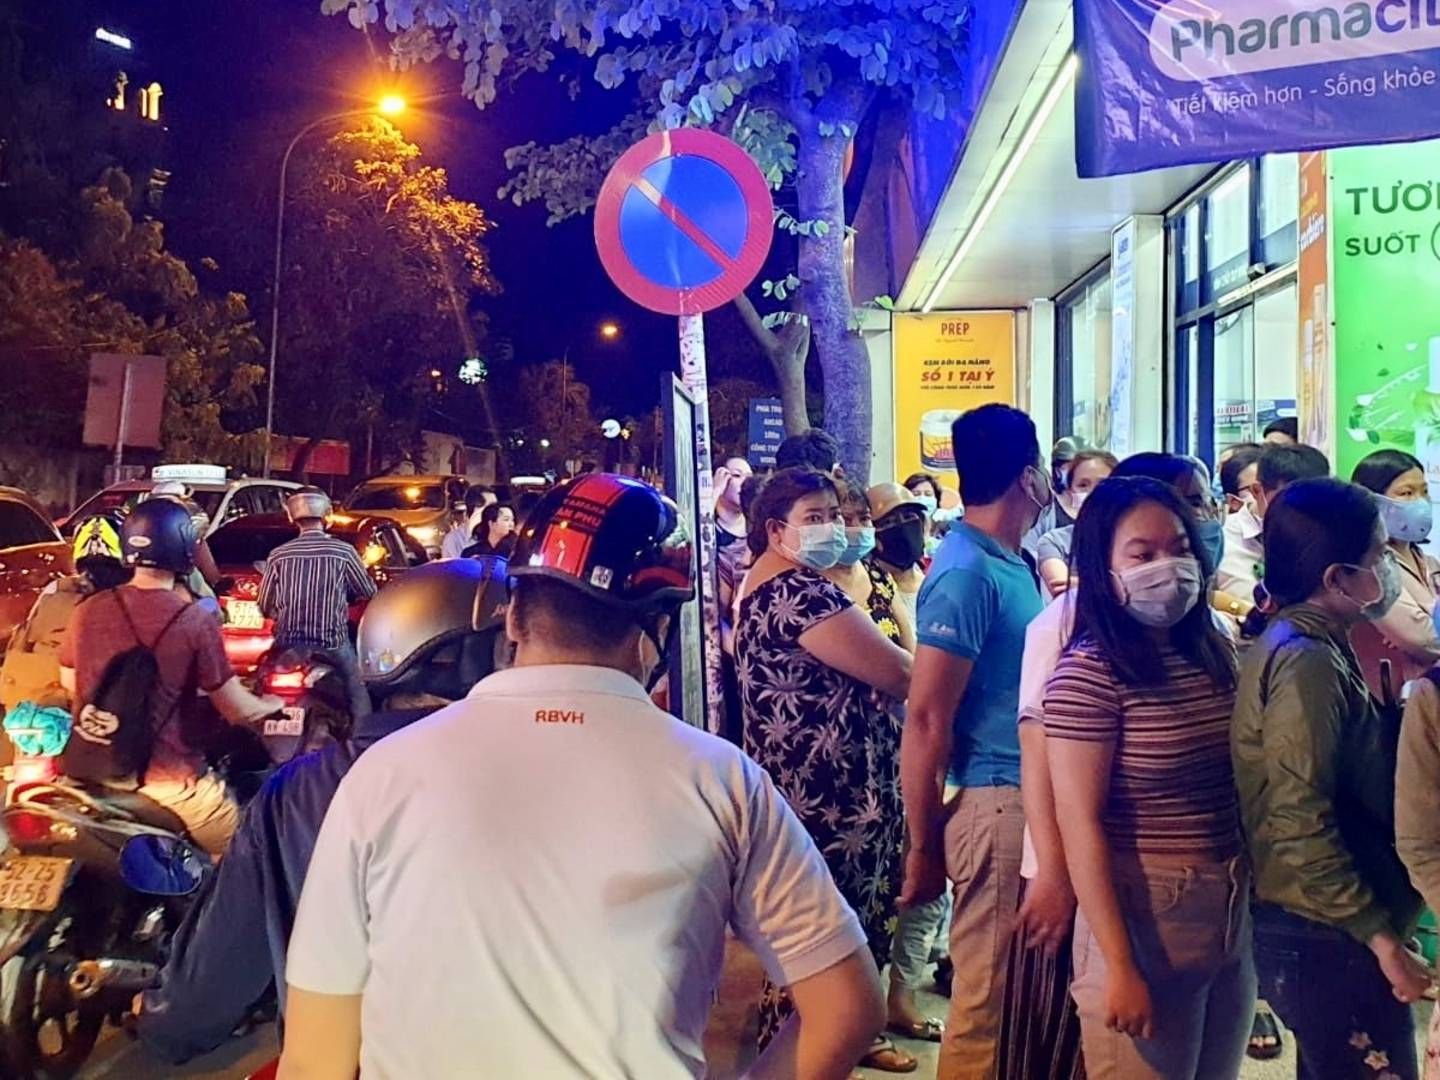 Folk står i kø til apoteket i Vietnam for at få håndsprit og masker, lyder meldingen fra Niels Østerberg, direktør i frugtfirmaet Orana. | Foto: Privat/Niels Østerberg